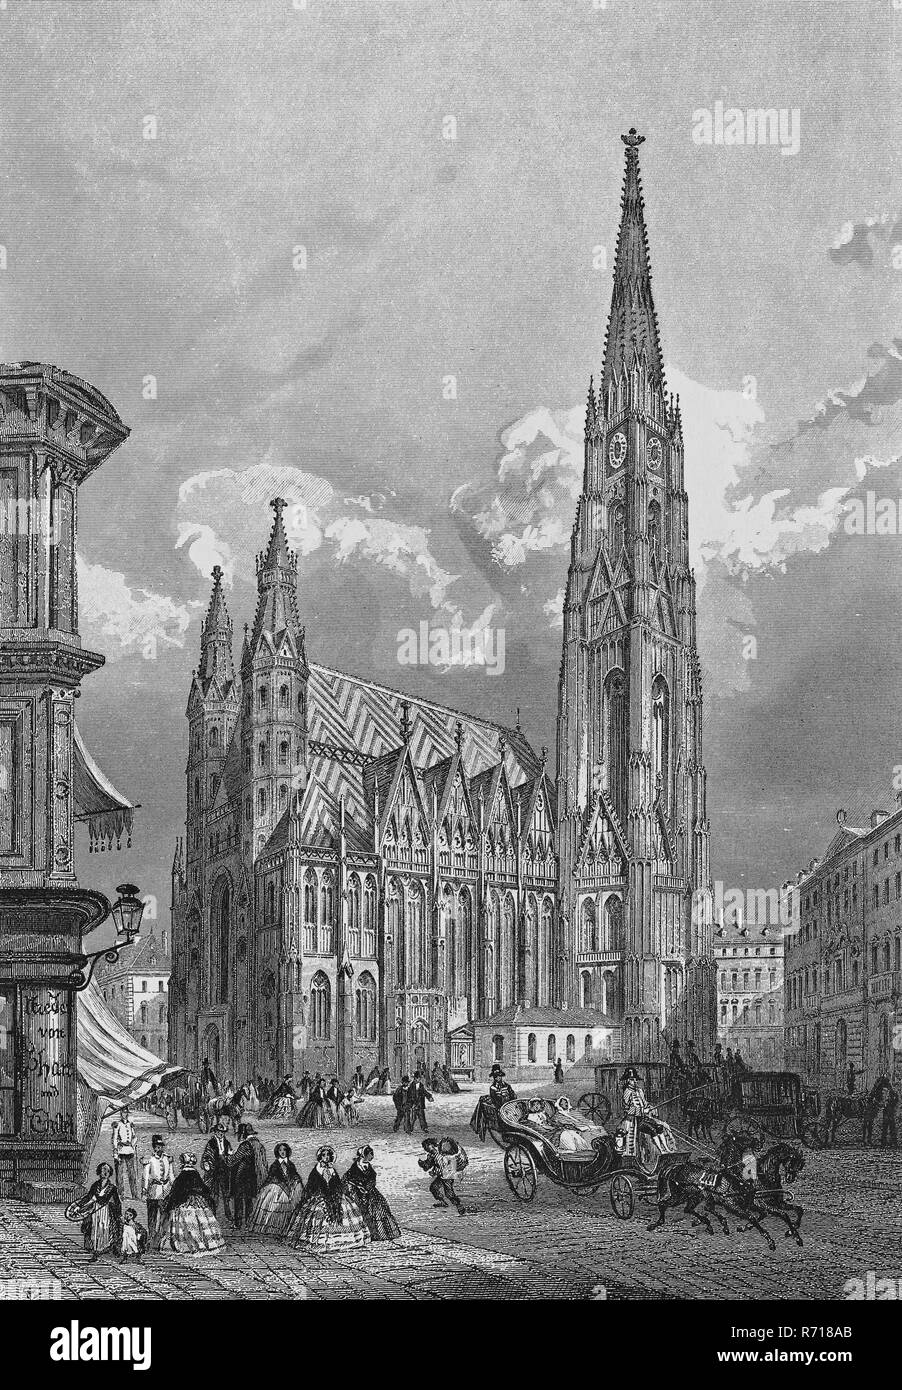 Vista de la ciudad histórica, acero grabado, la Catedral de San Esteban, alrededor de 1830, Viena, Austria Foto de stock